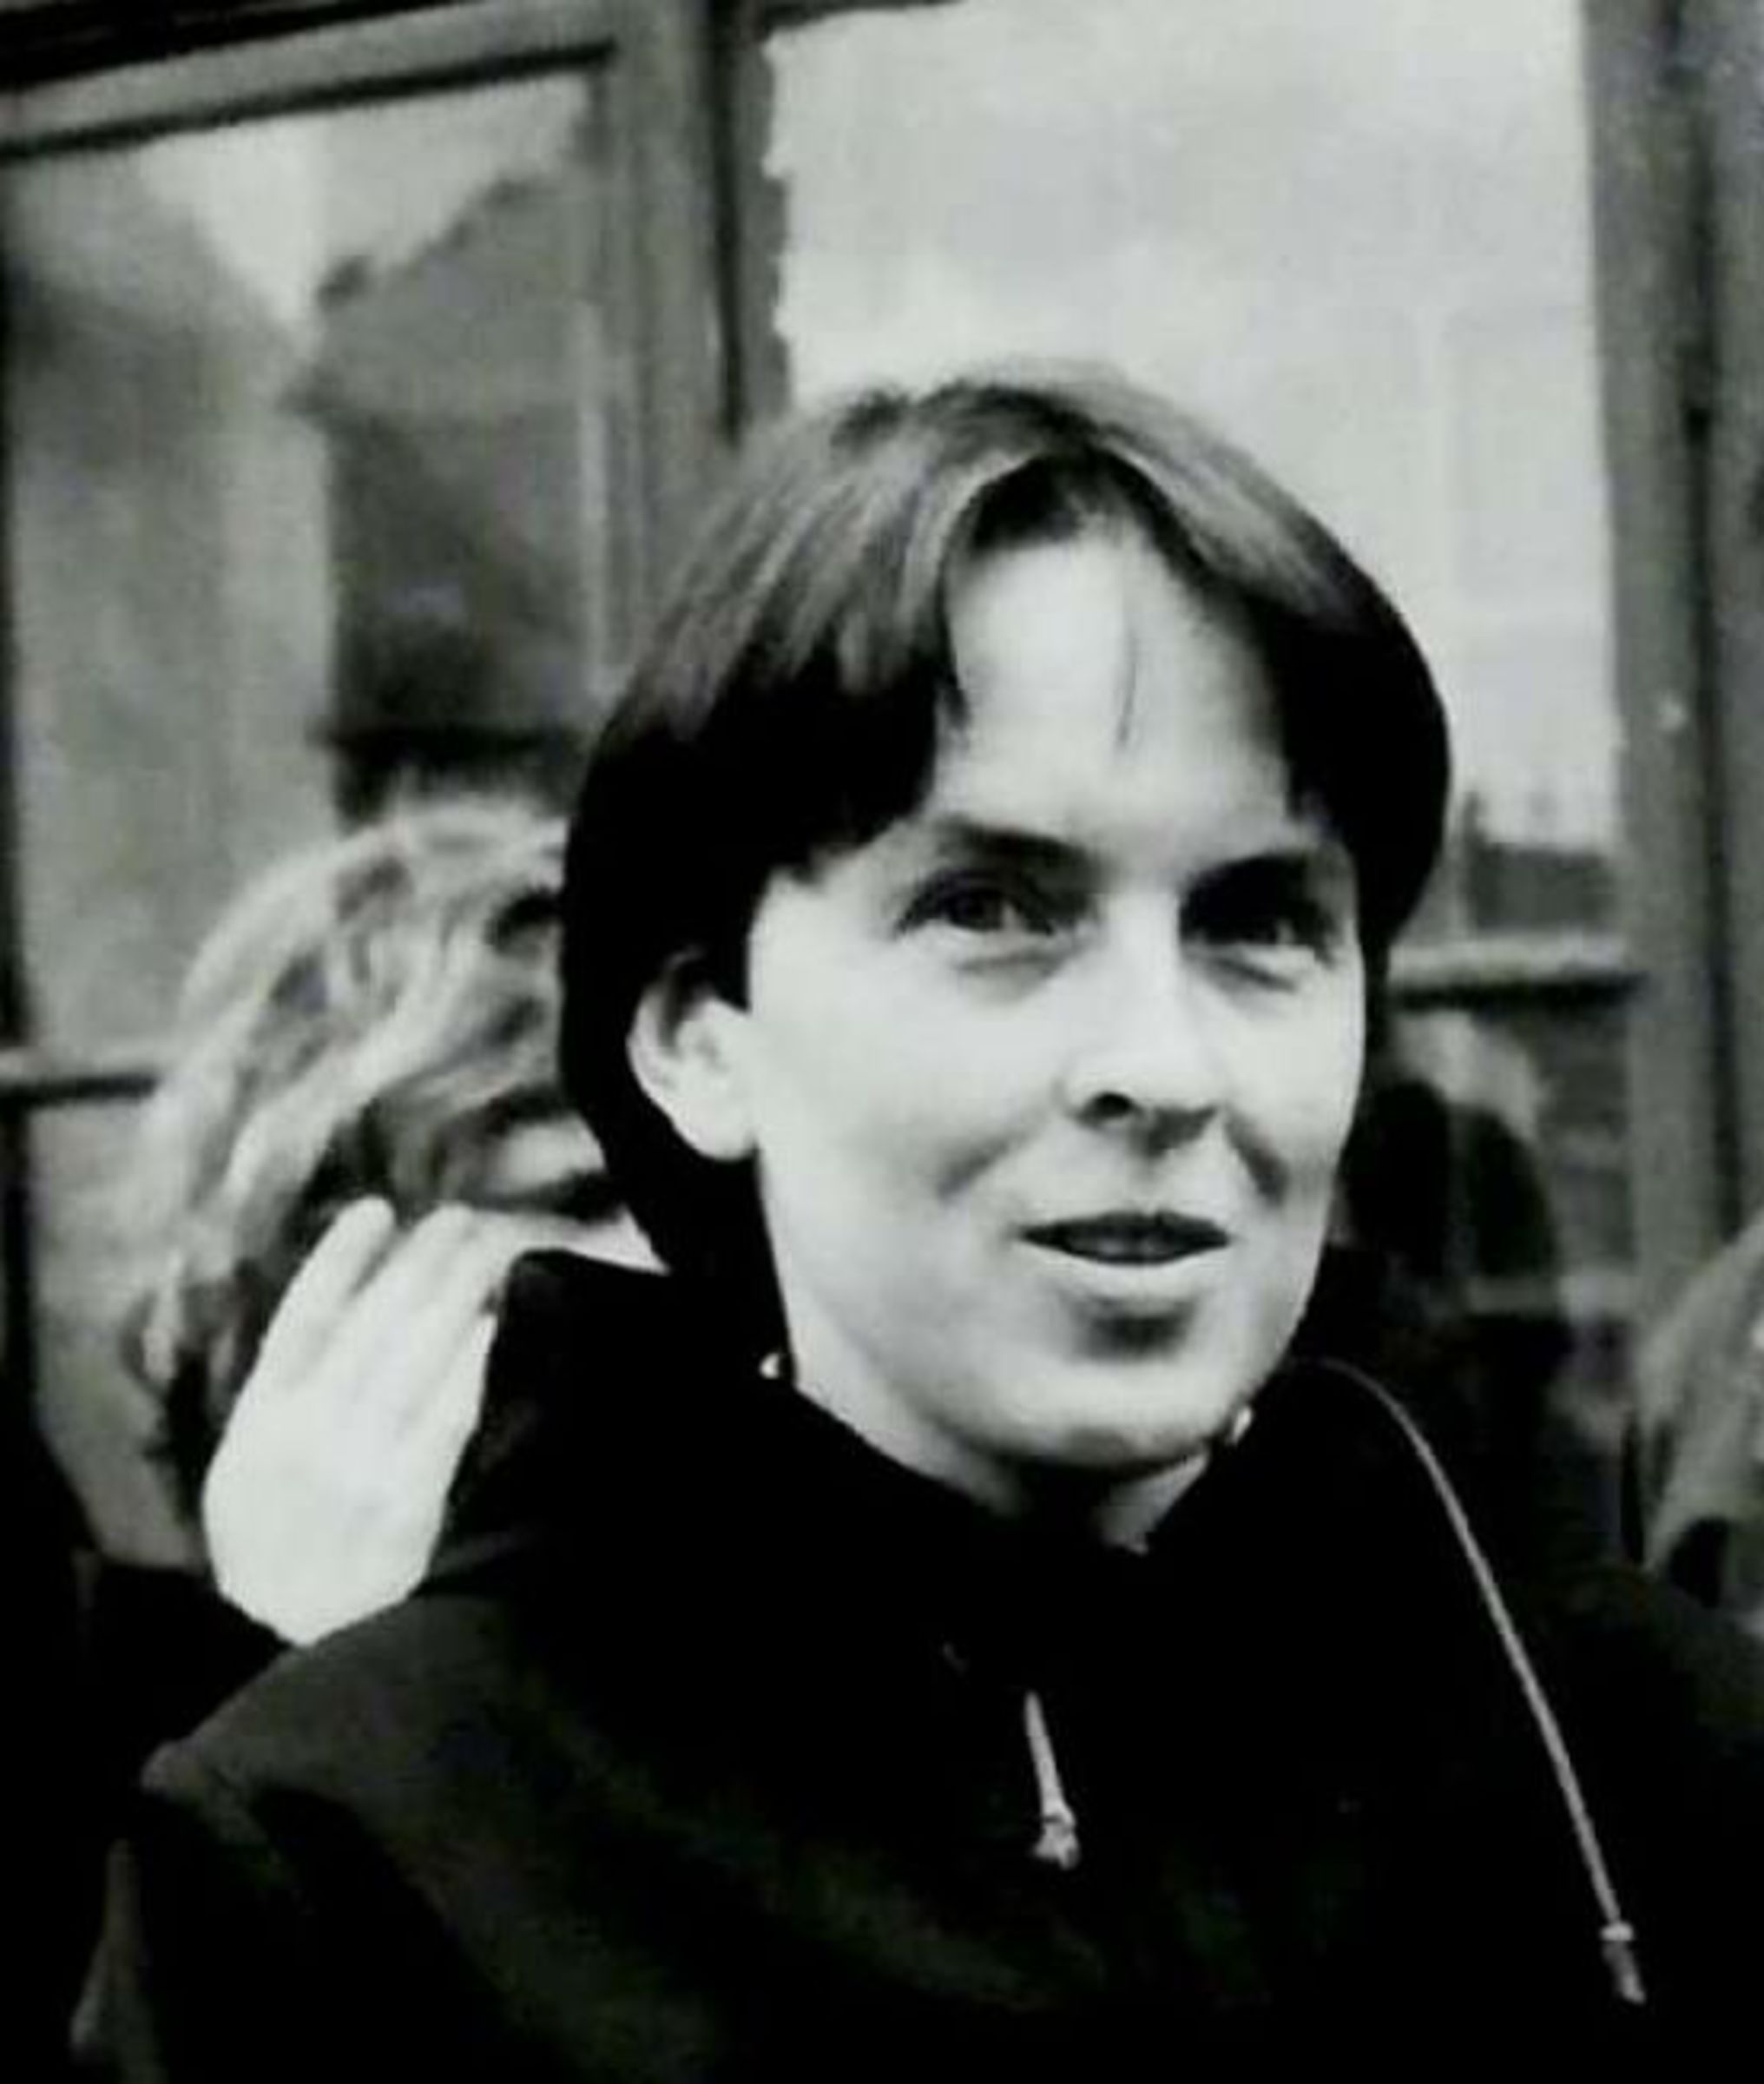 Hana portrét, Vrchlabí 1989